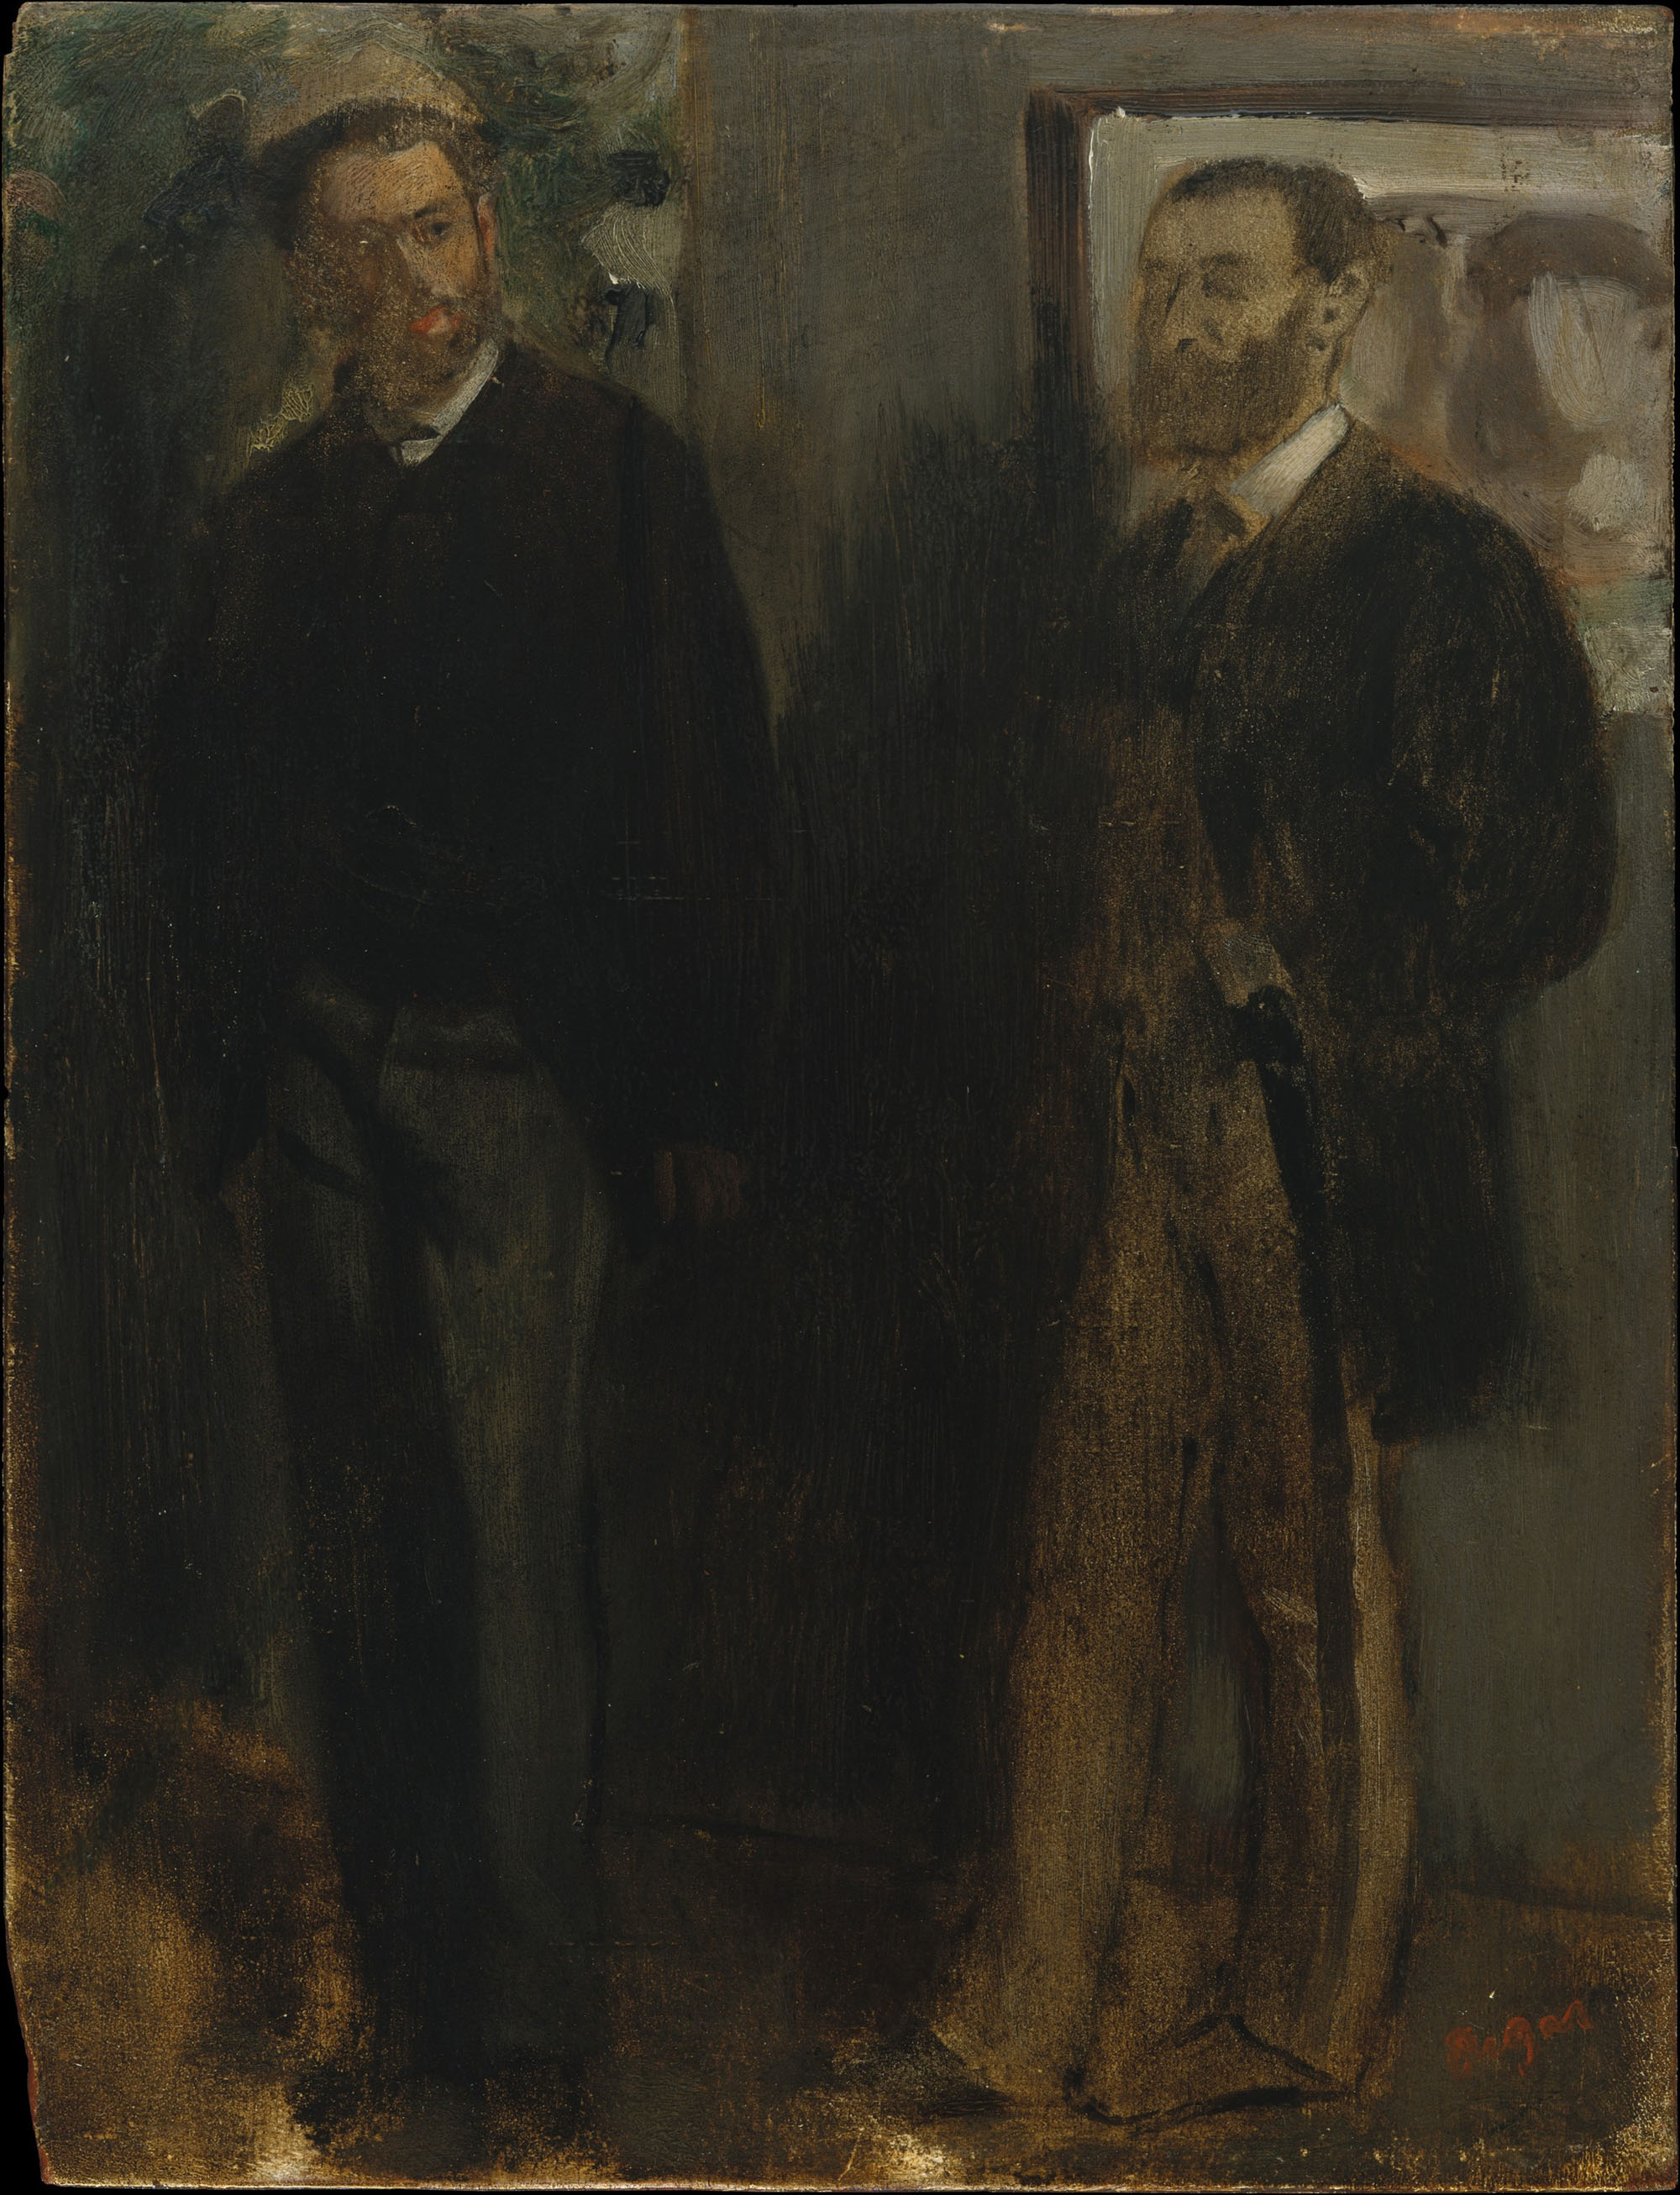 Эдгар Дега. "Двое мужчин". Около 1865-1869.